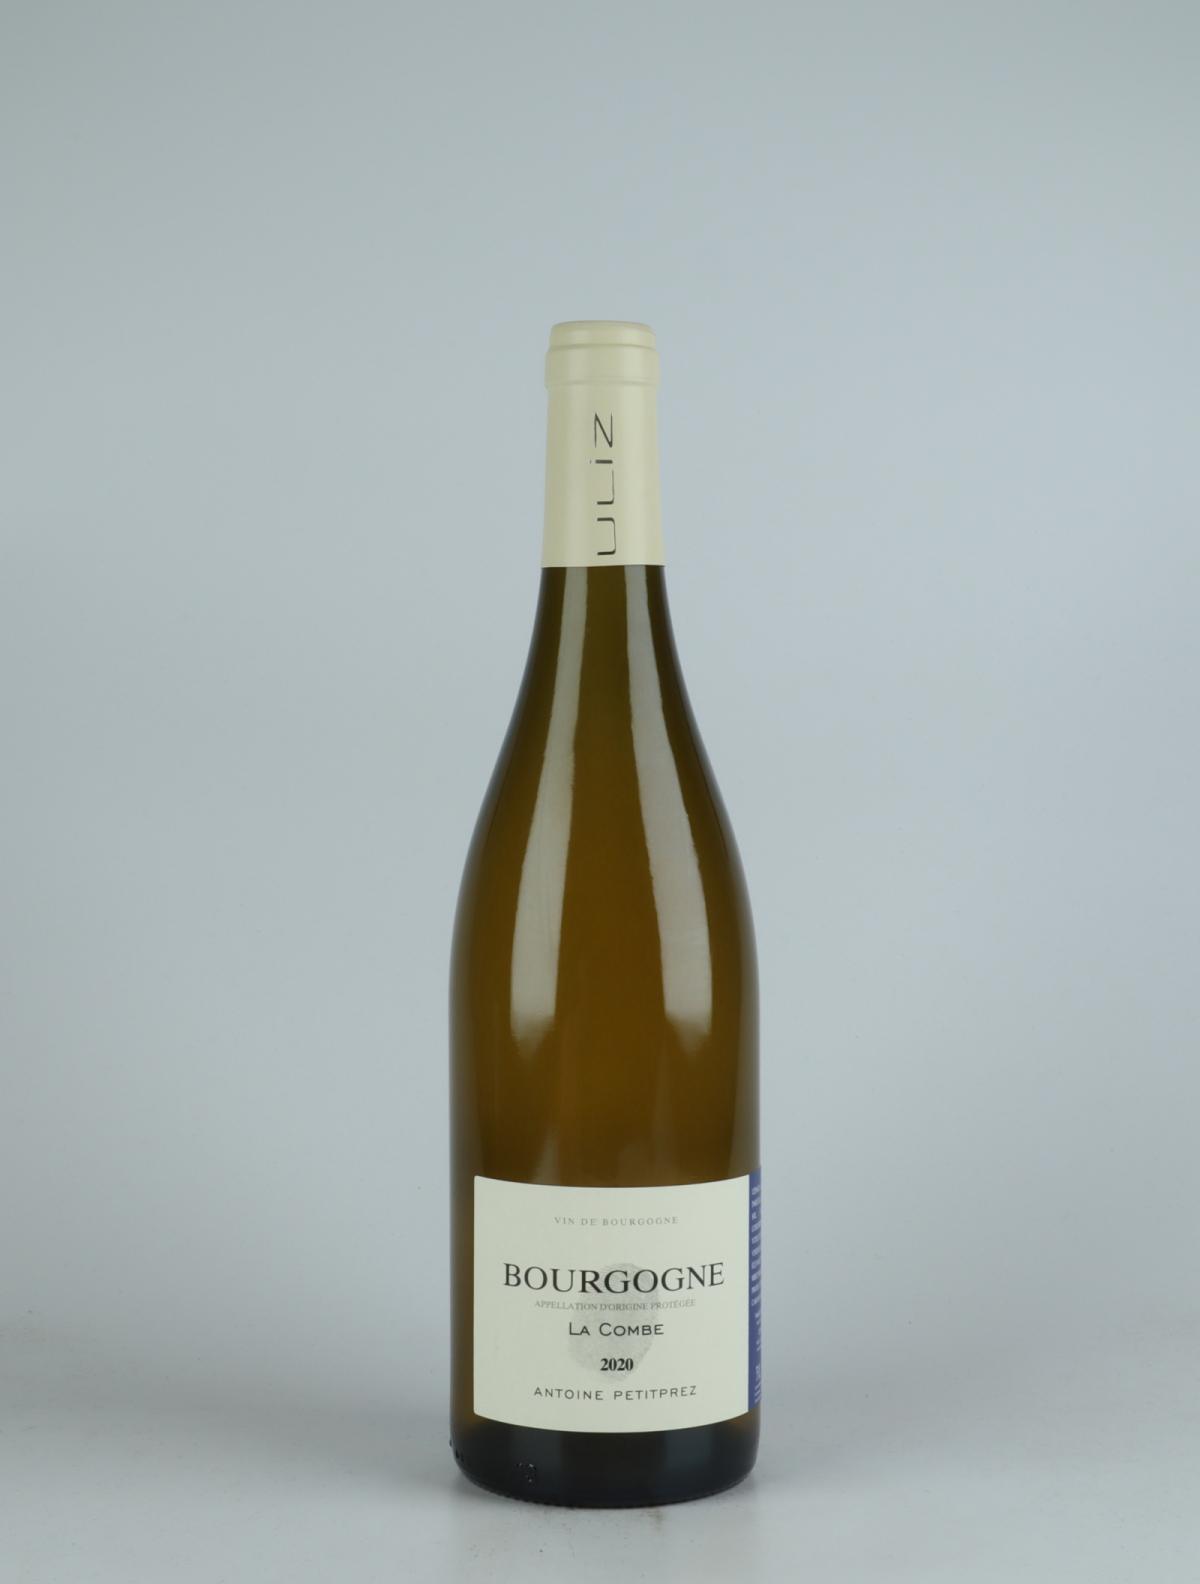 A bottle 2020 Bourgogne Blanc - La Combe White wine from Antoine Petitprez, Burgundy in France